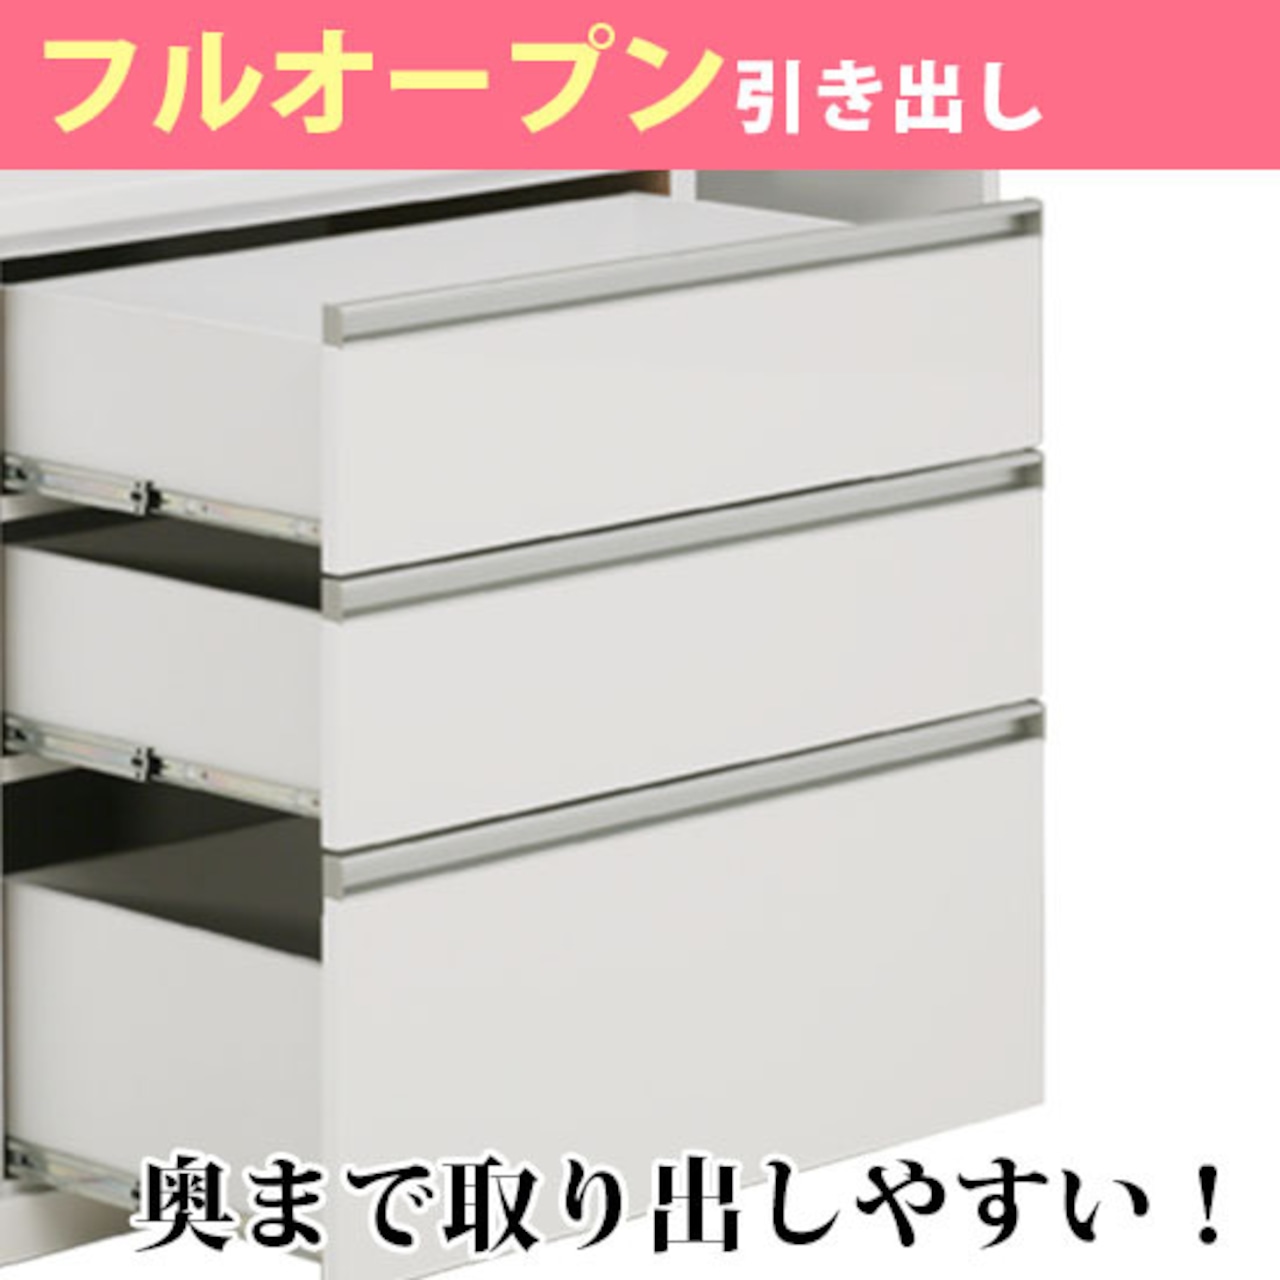 【幅120】キッチンボード 食器棚  レンジ台 収納 炊飯器収納